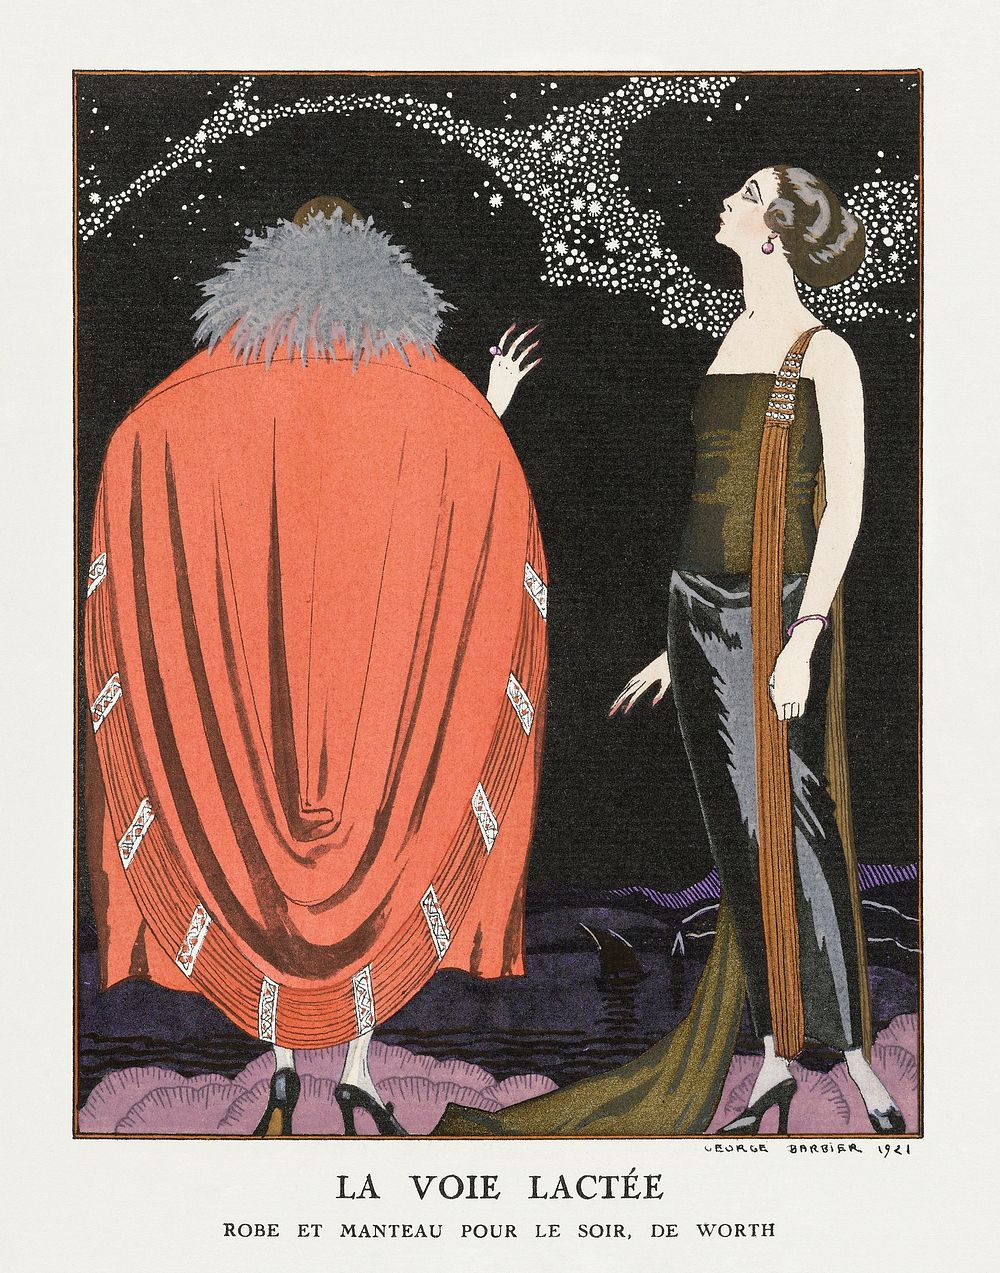 La voie lact&eacute;e: Robe et manteau pour le soir, de Worth (1921) fashion illustration in high resolution by George…